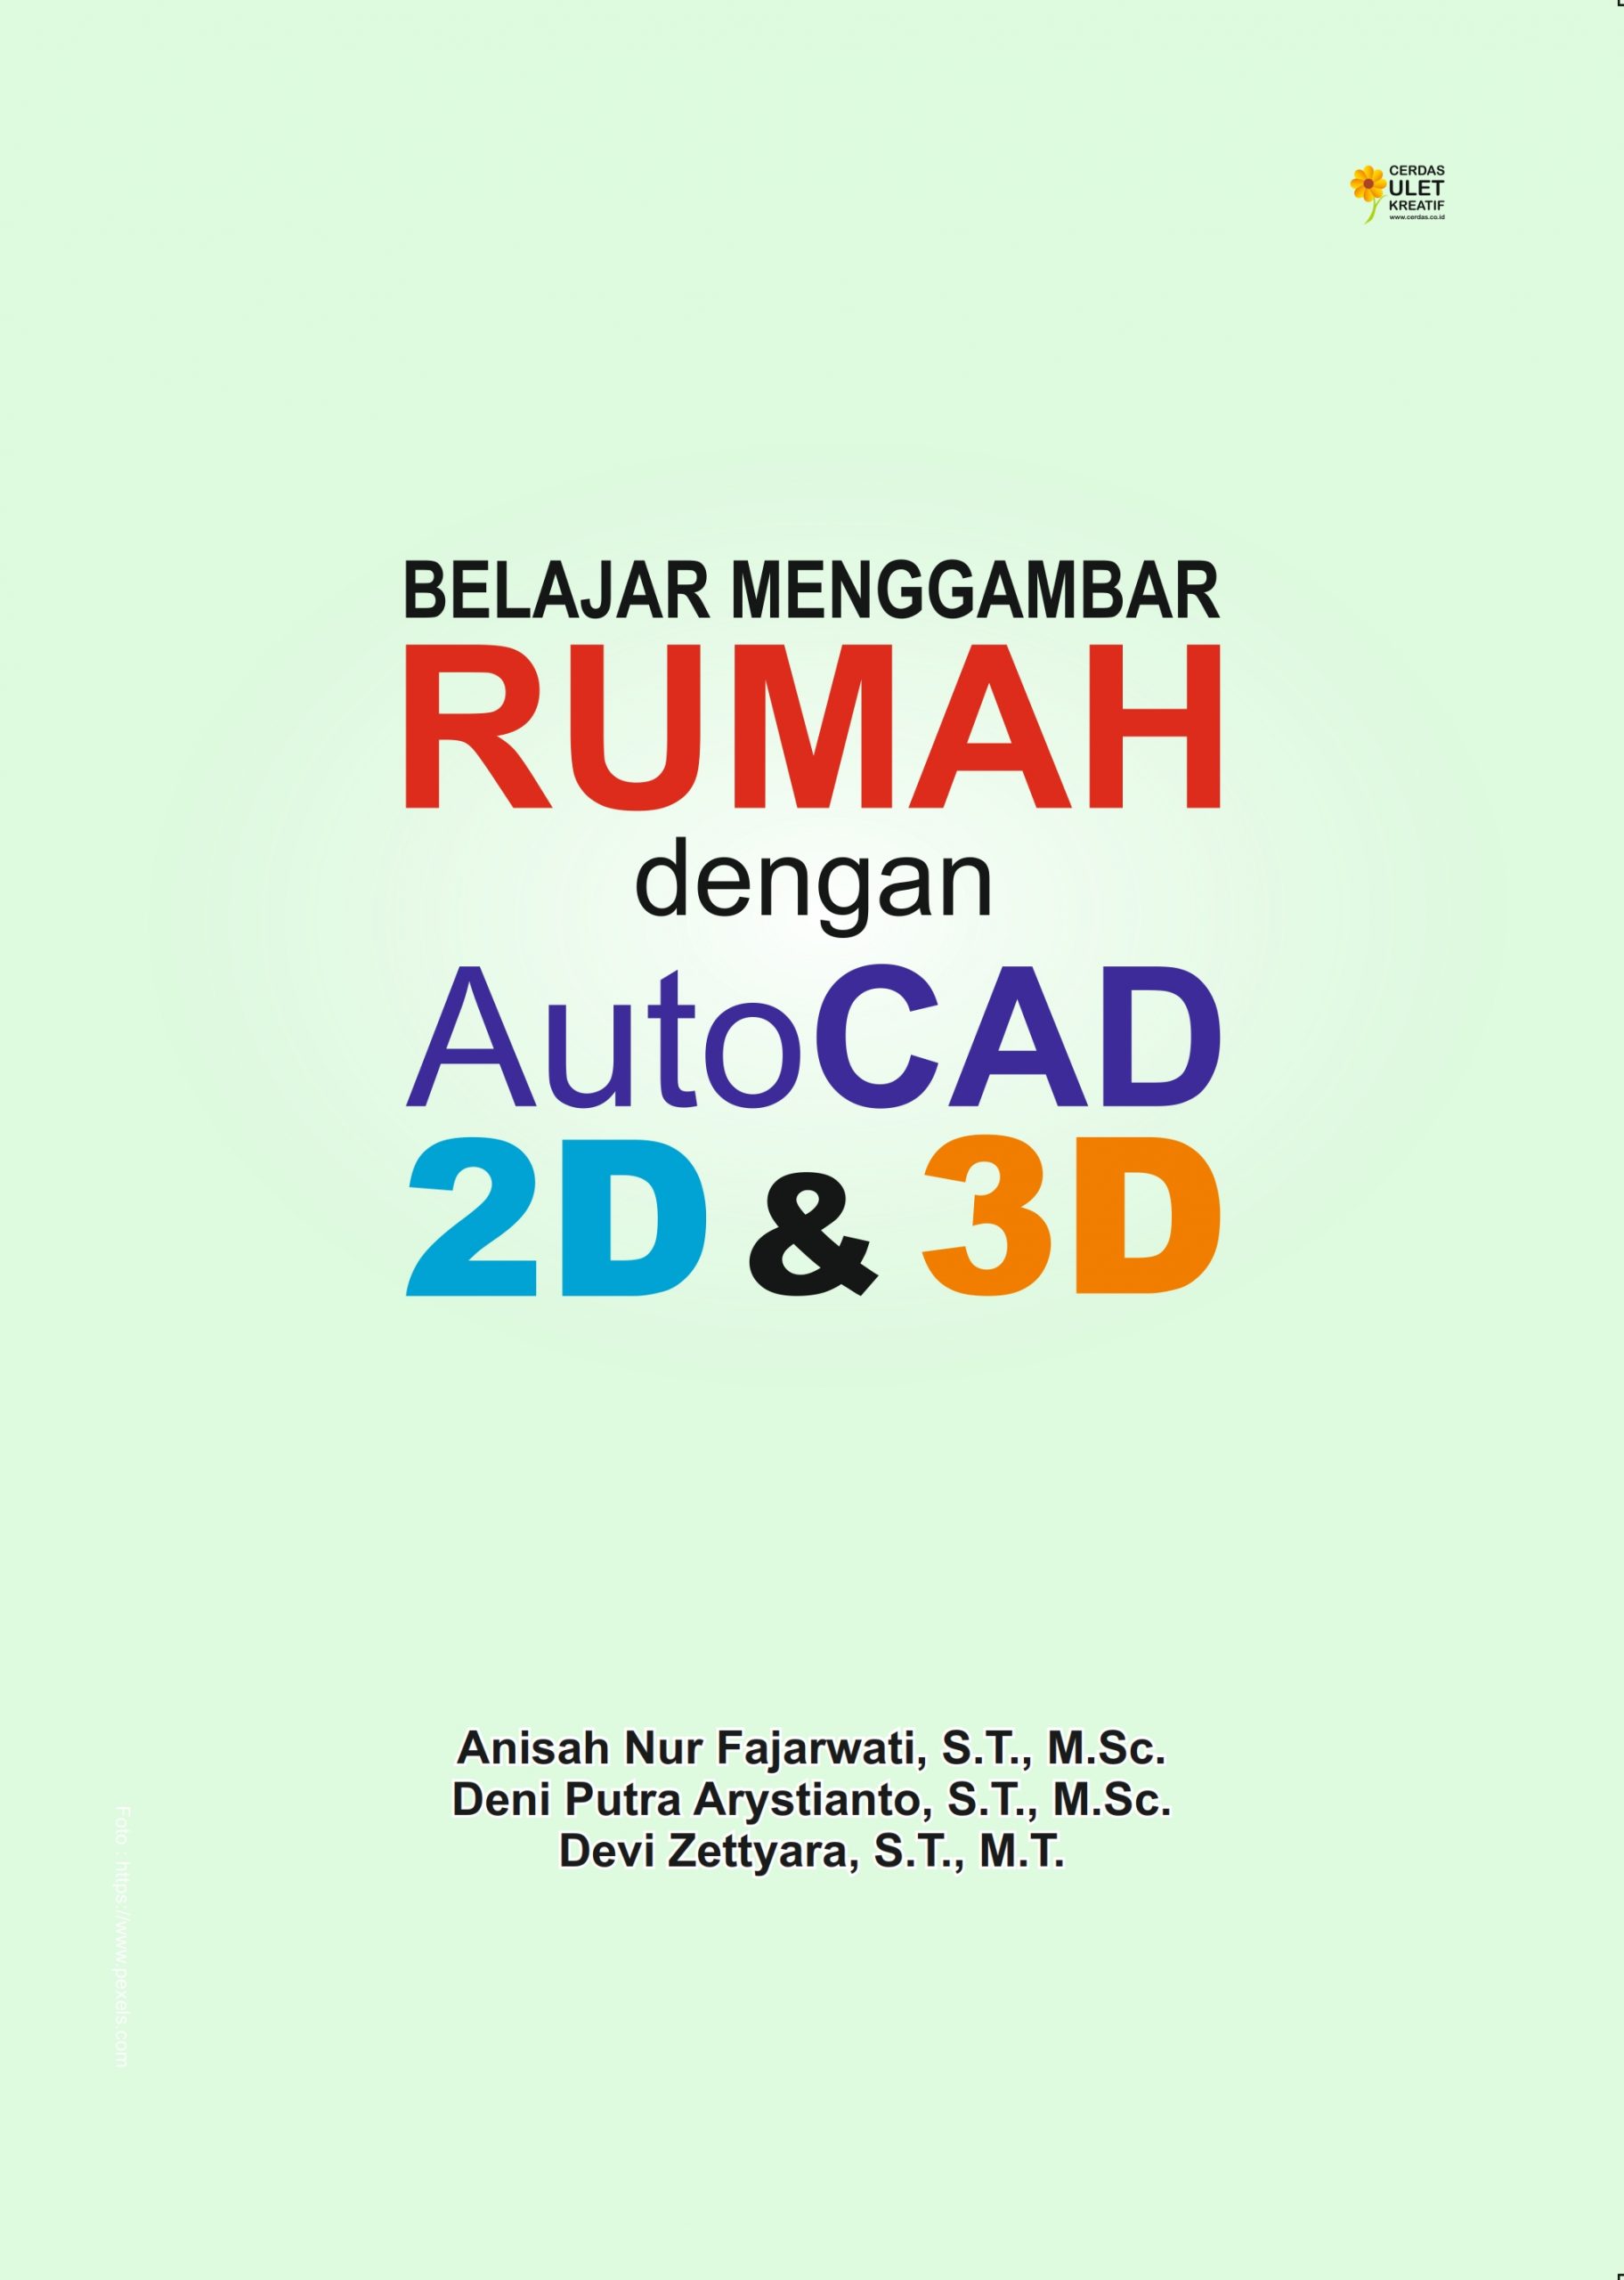 Belajar Menggambar Rumah dengan AutoCAD 2D & 3D